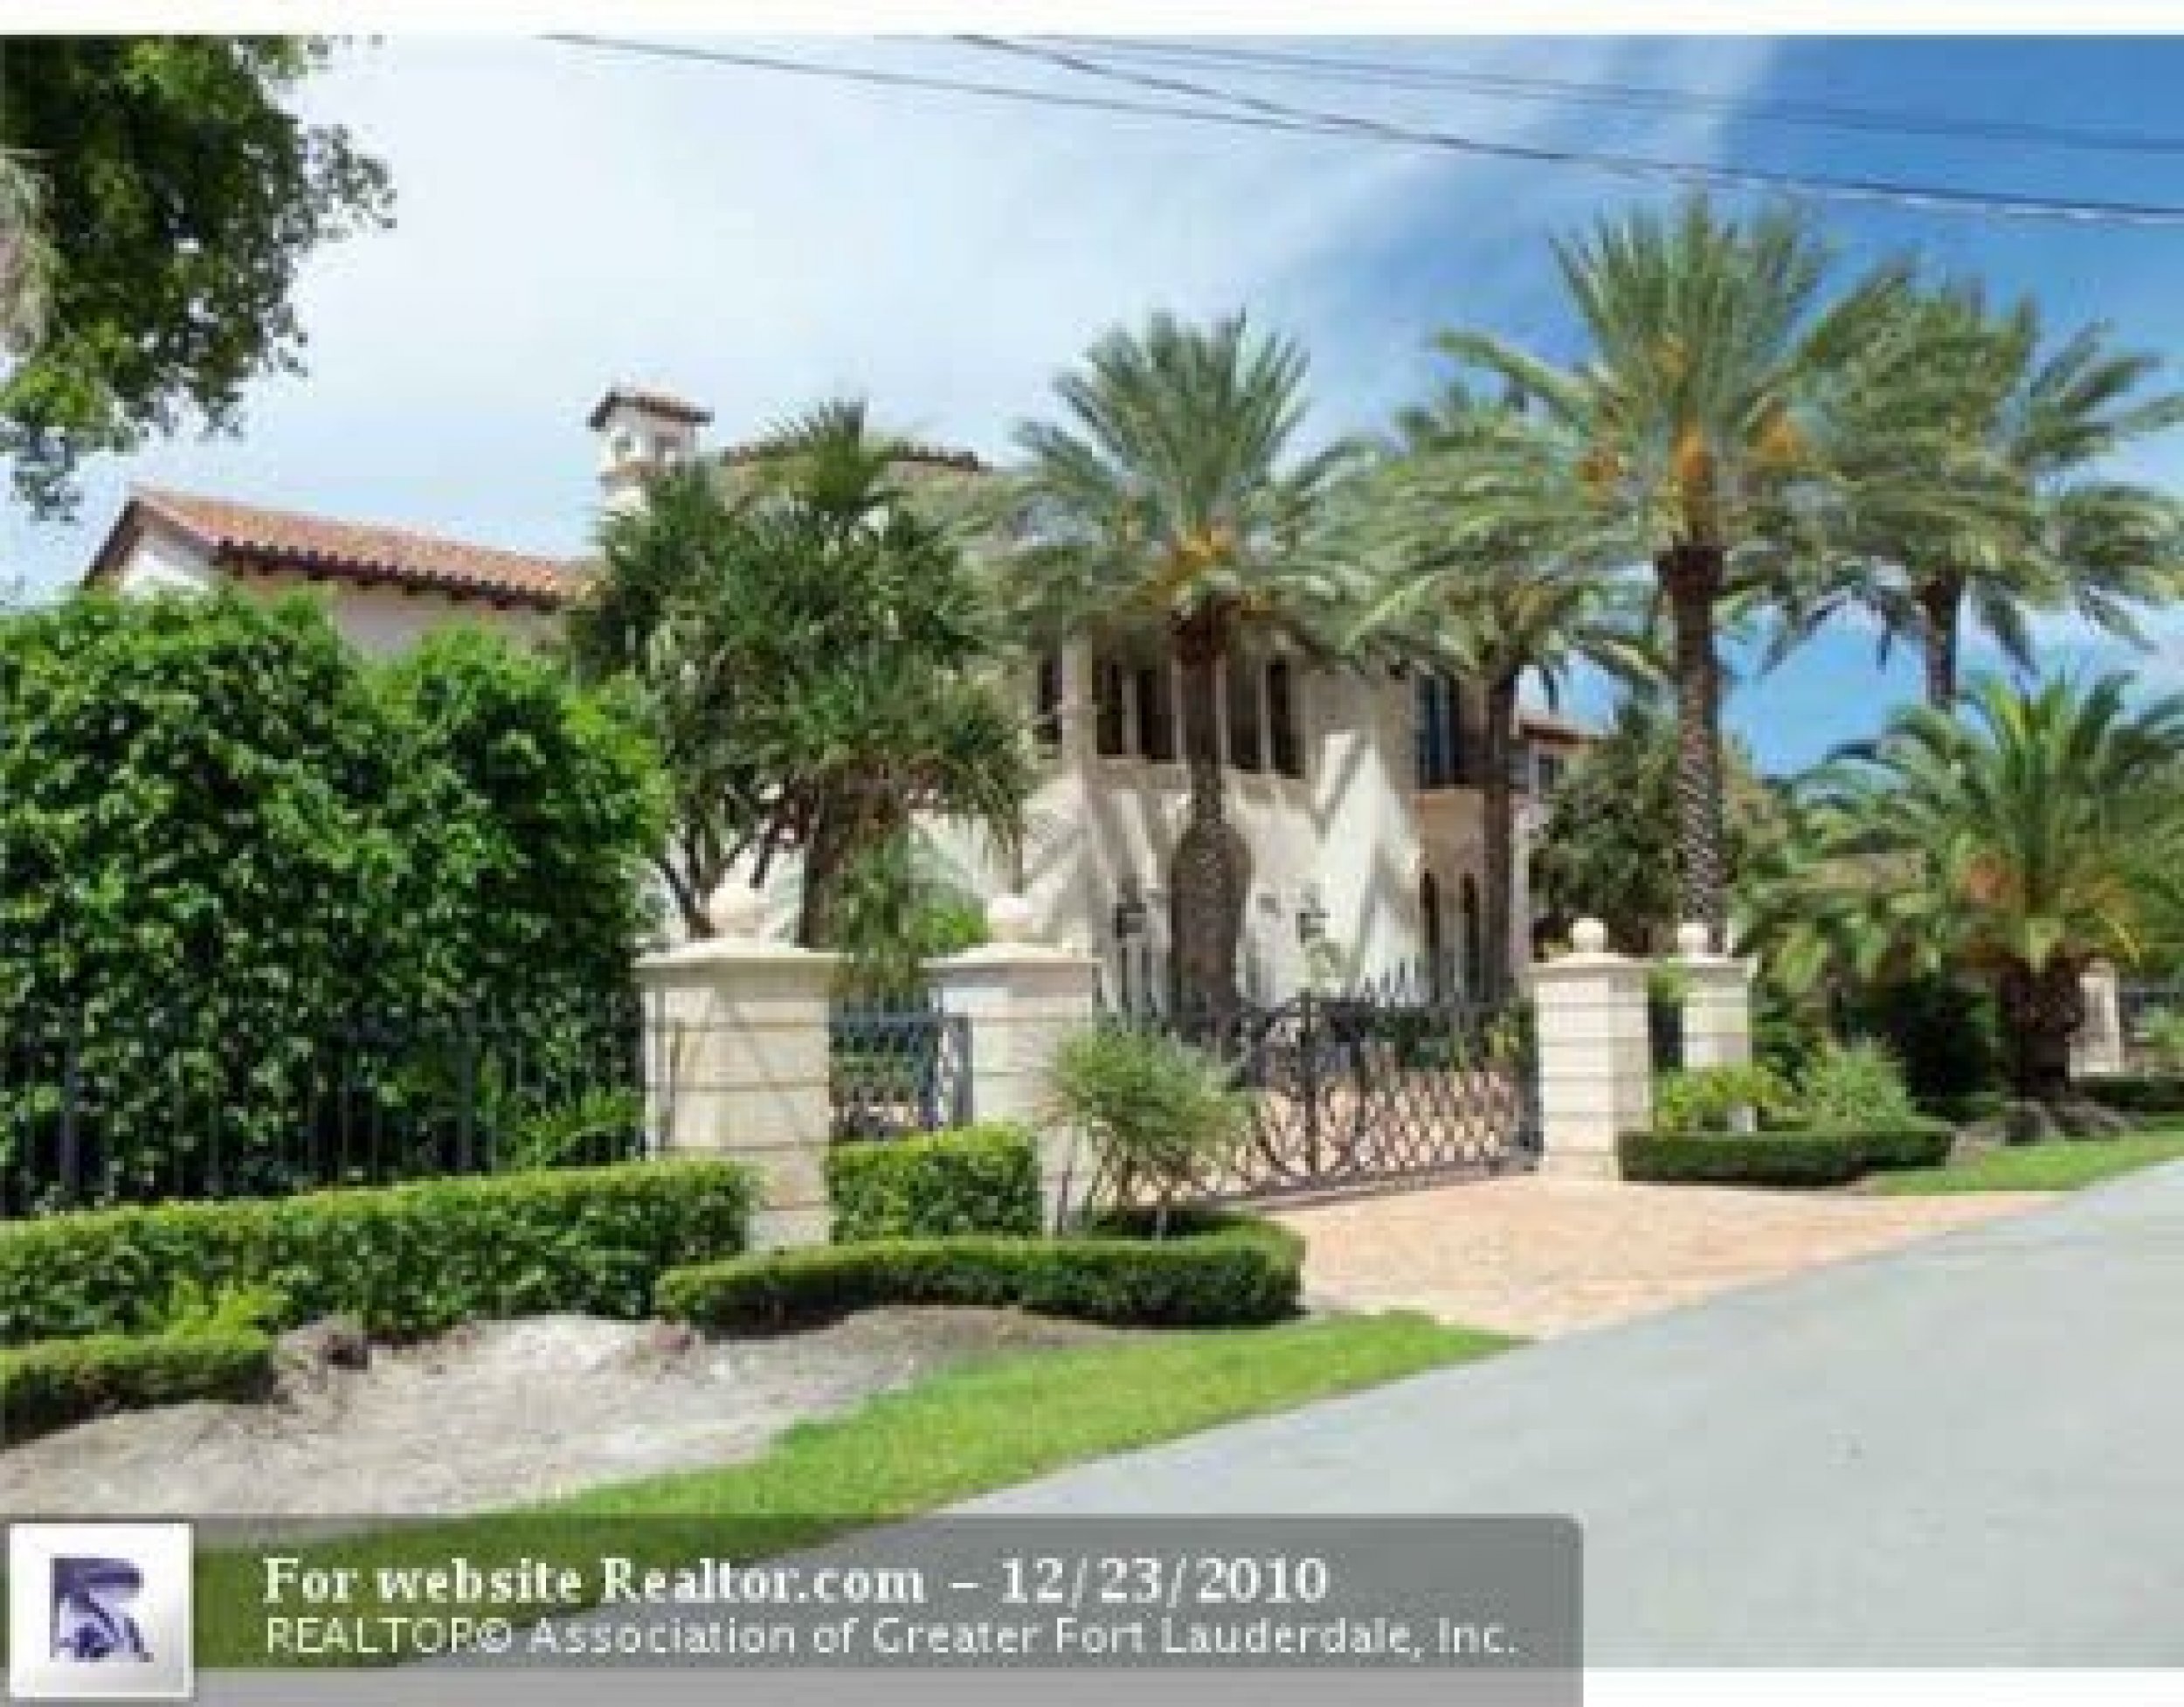 Larsa Pippen's Lists $12 Million Fort Lauderdale Estate: Photos